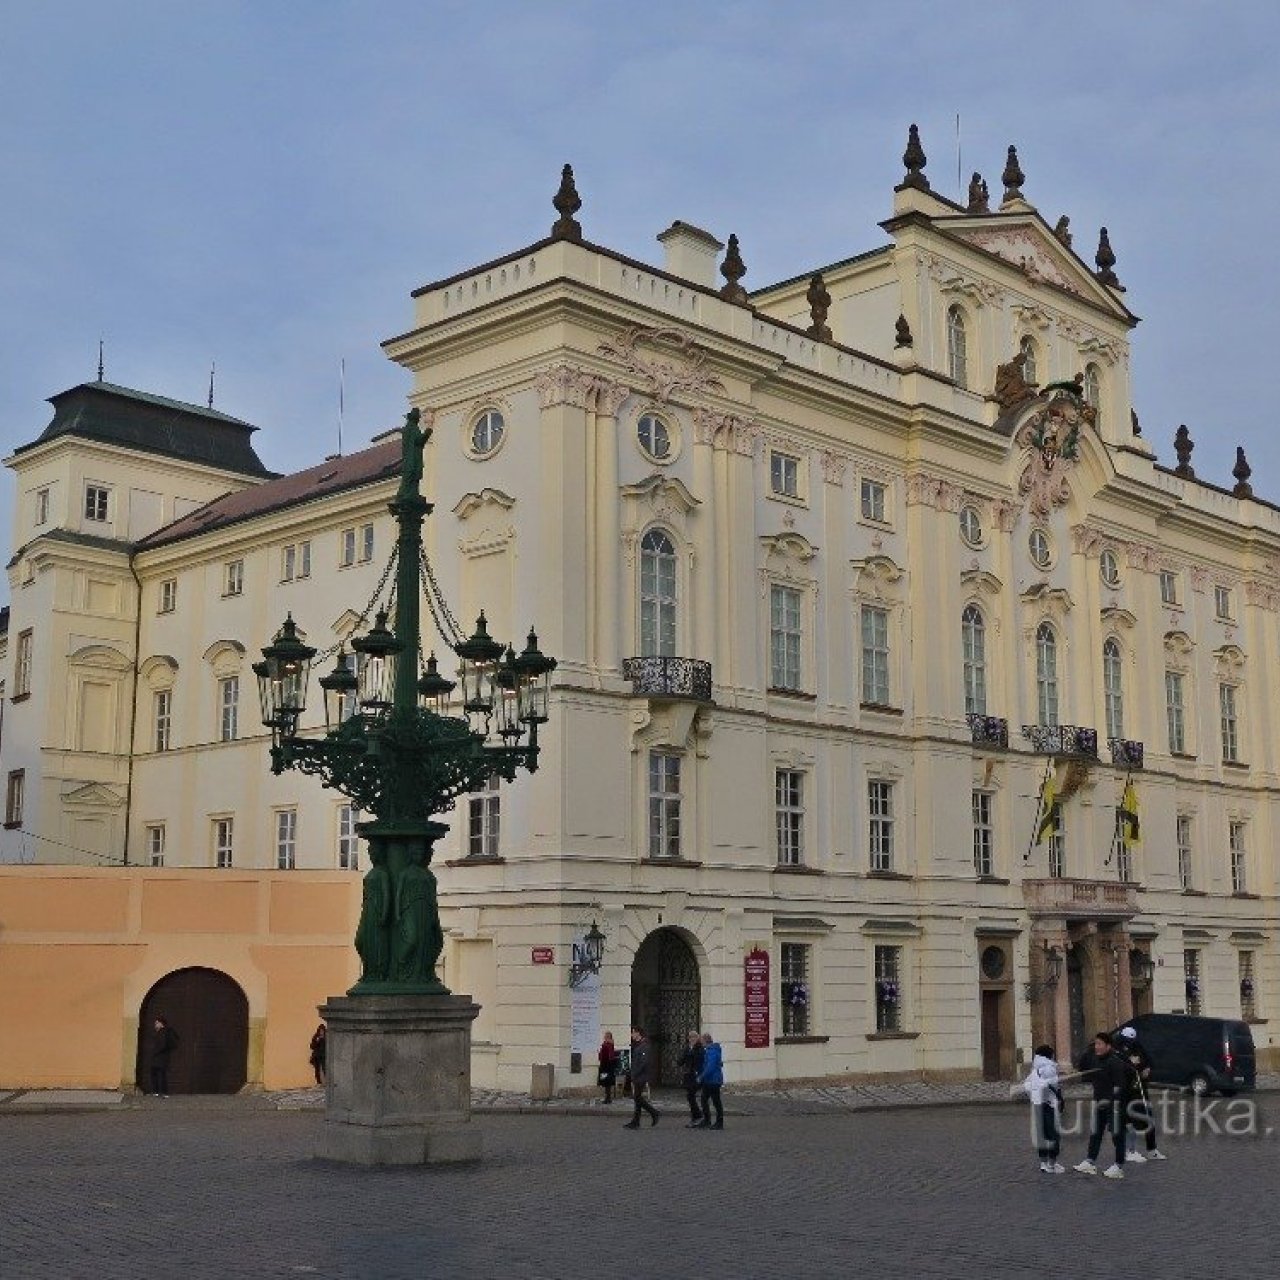 Praha (Hradčany) - Arcibiskupský palác